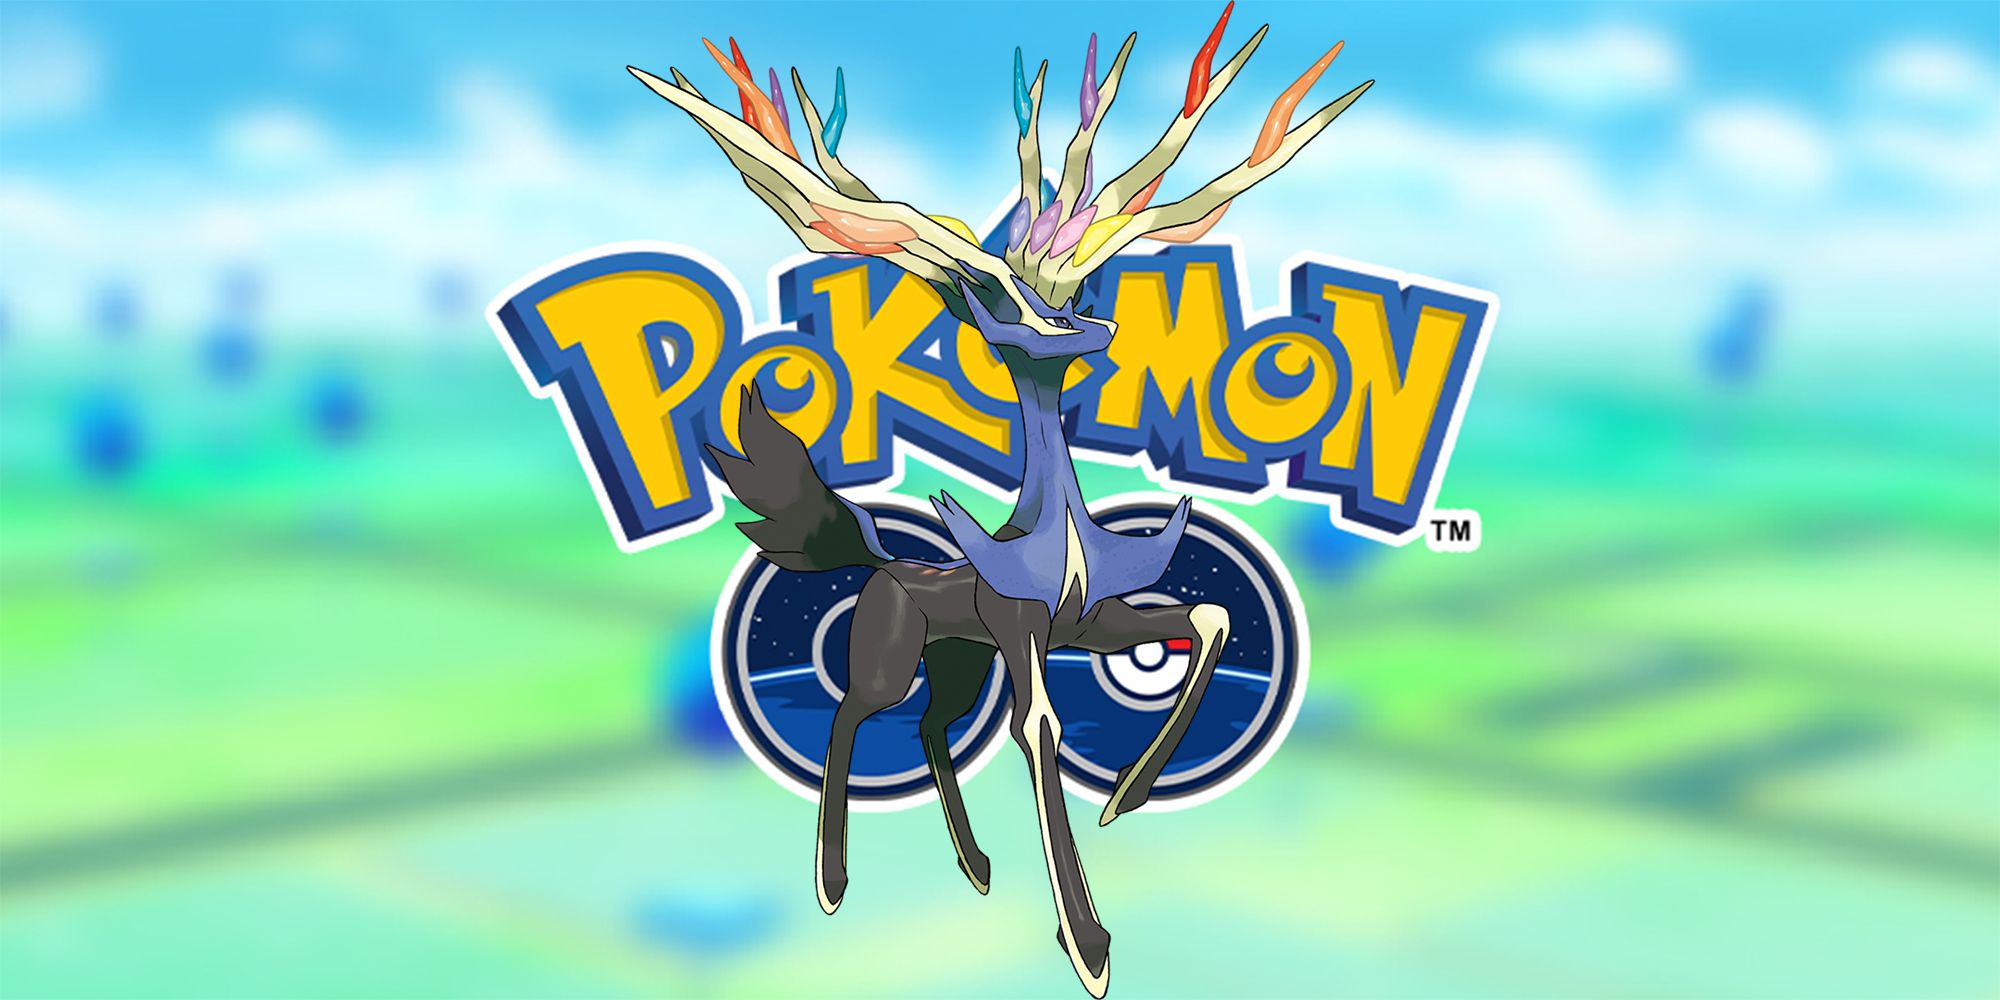 Pokémon Go - Raid de Xerneas - counters, fraquezas e ataques